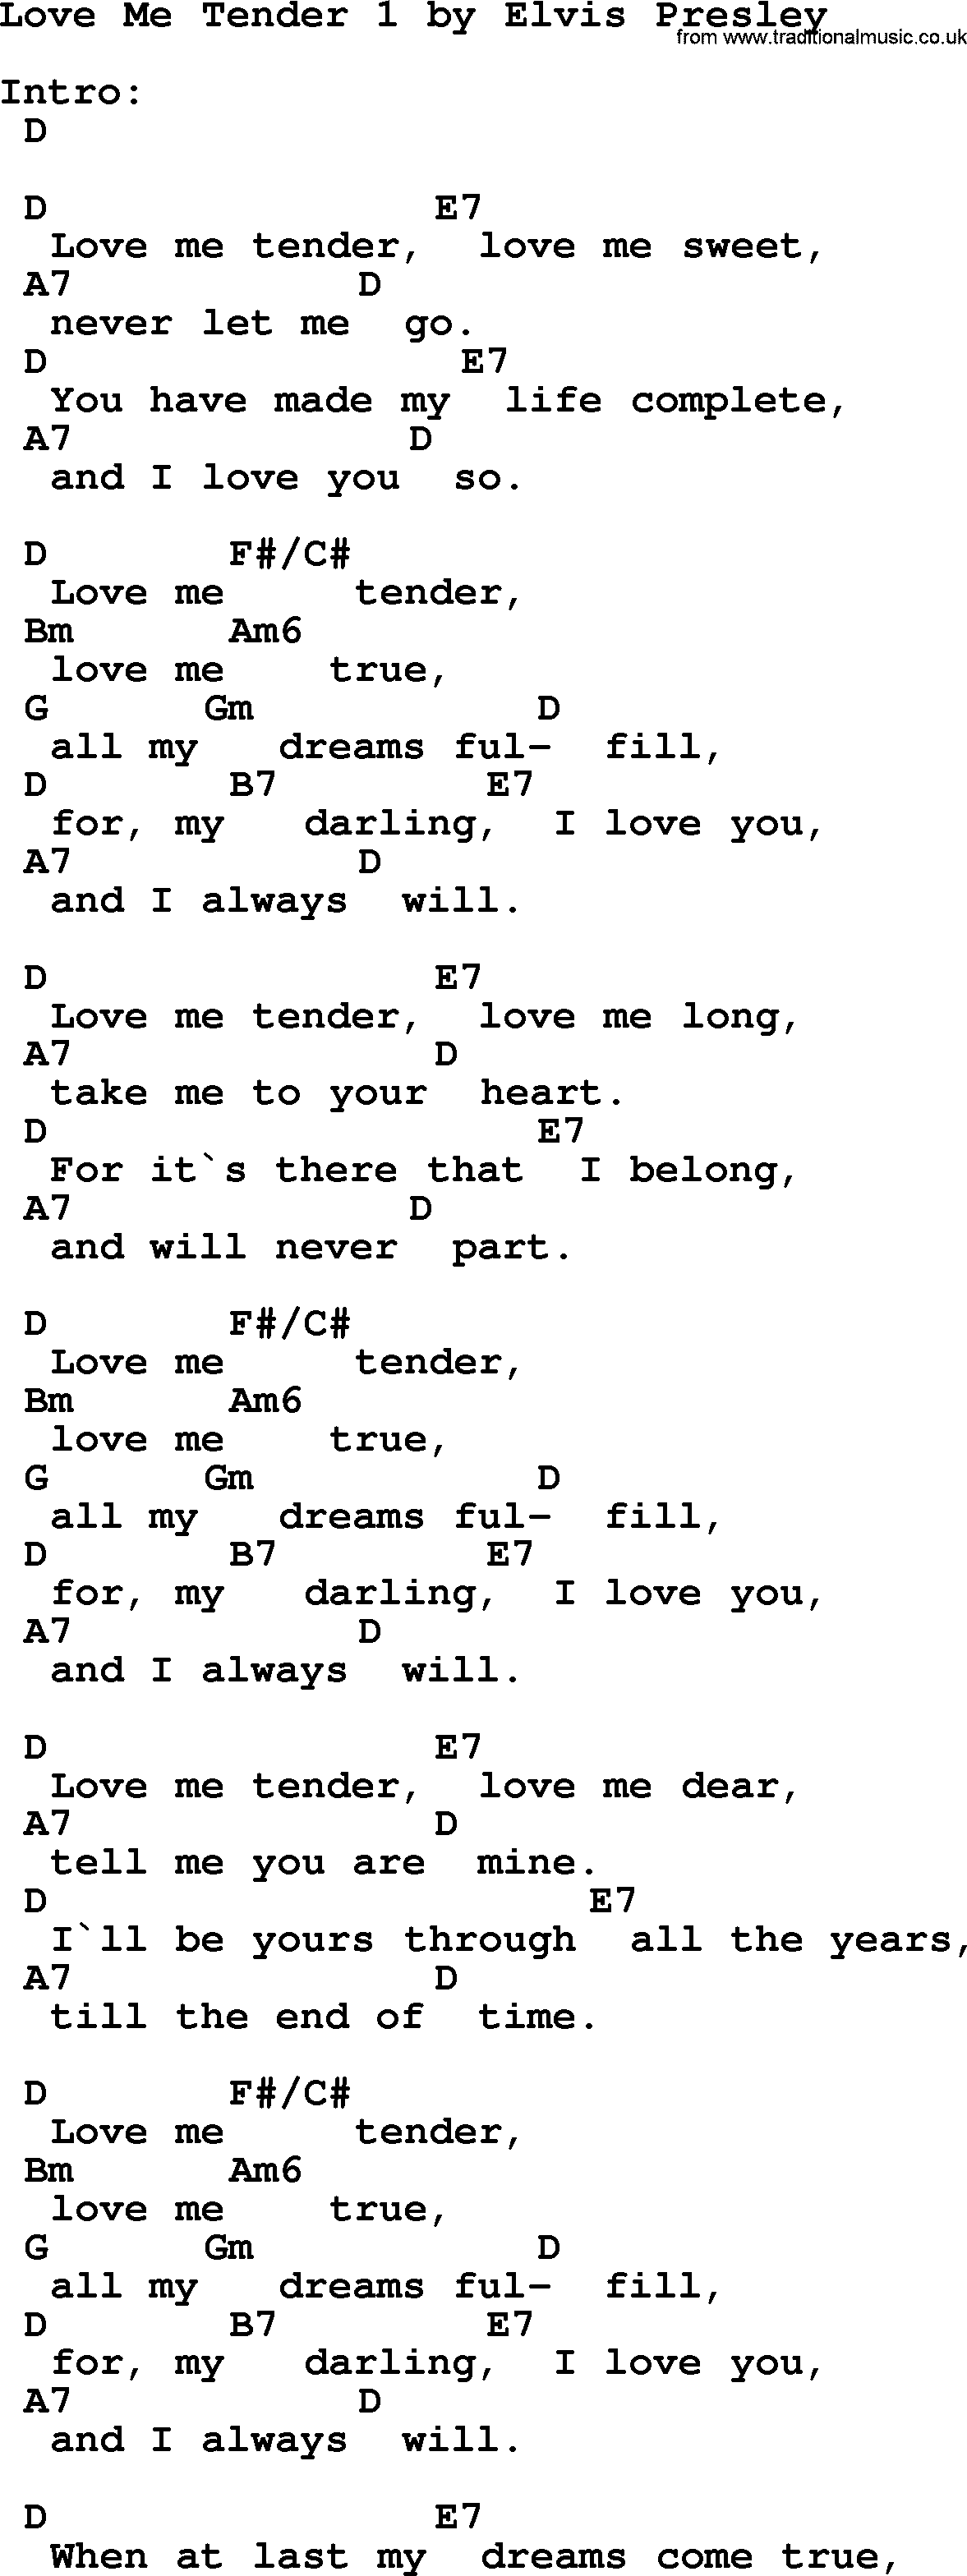 Elvis Presley song: Love Me Tender 1, lyrics and chords